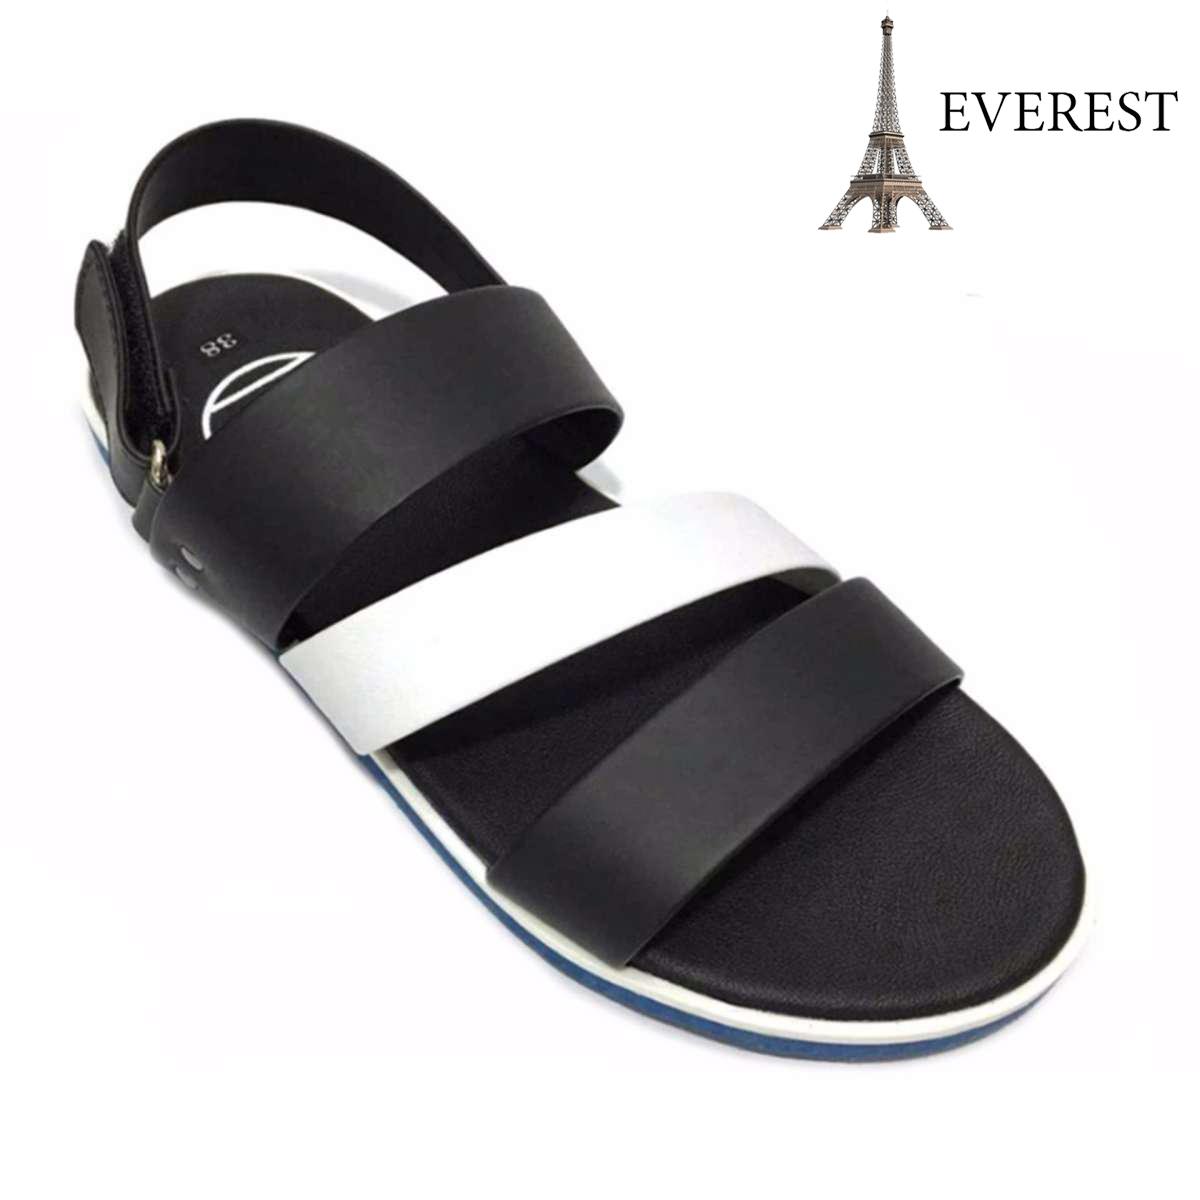 Giày Sandal 3 quai ngang nam thời trang Everest - EVE01 (Đen phối trắng) D37